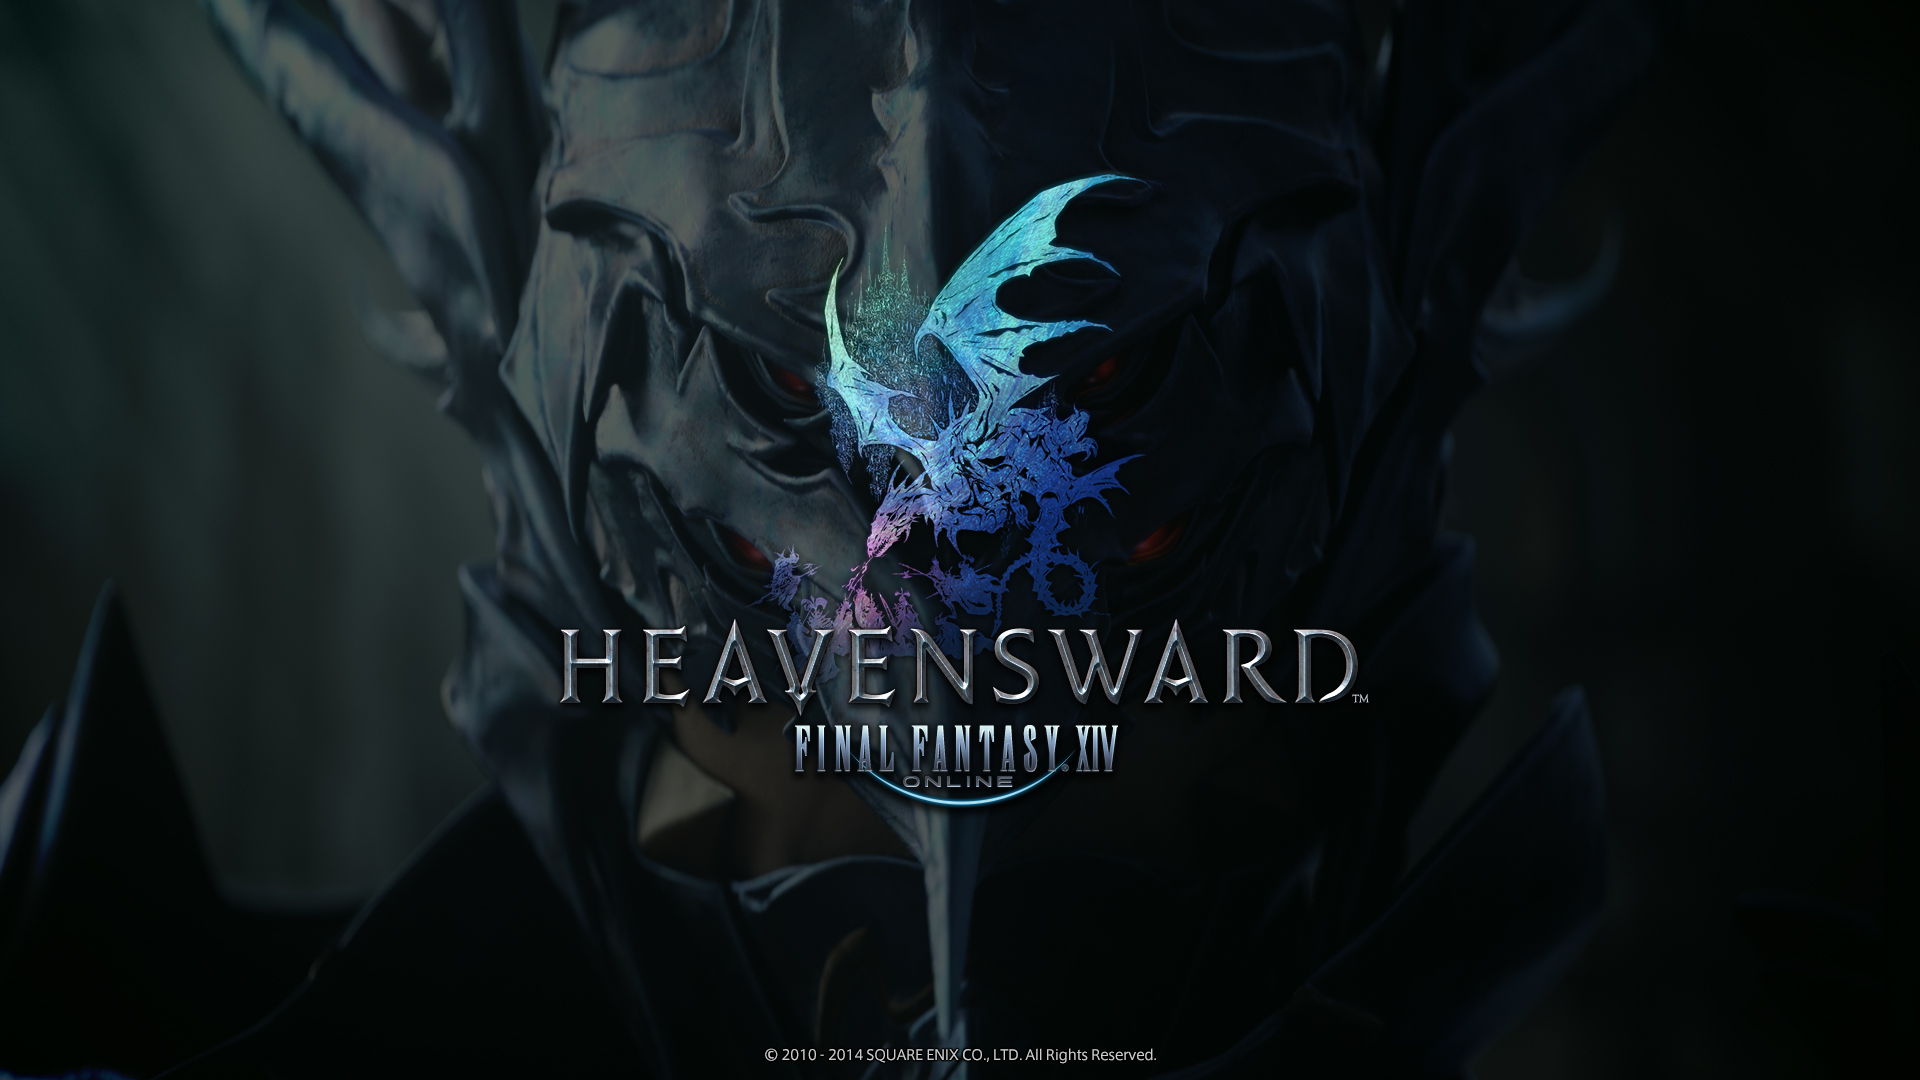 Final Fantasy Xiv Heavensward Wallpaper